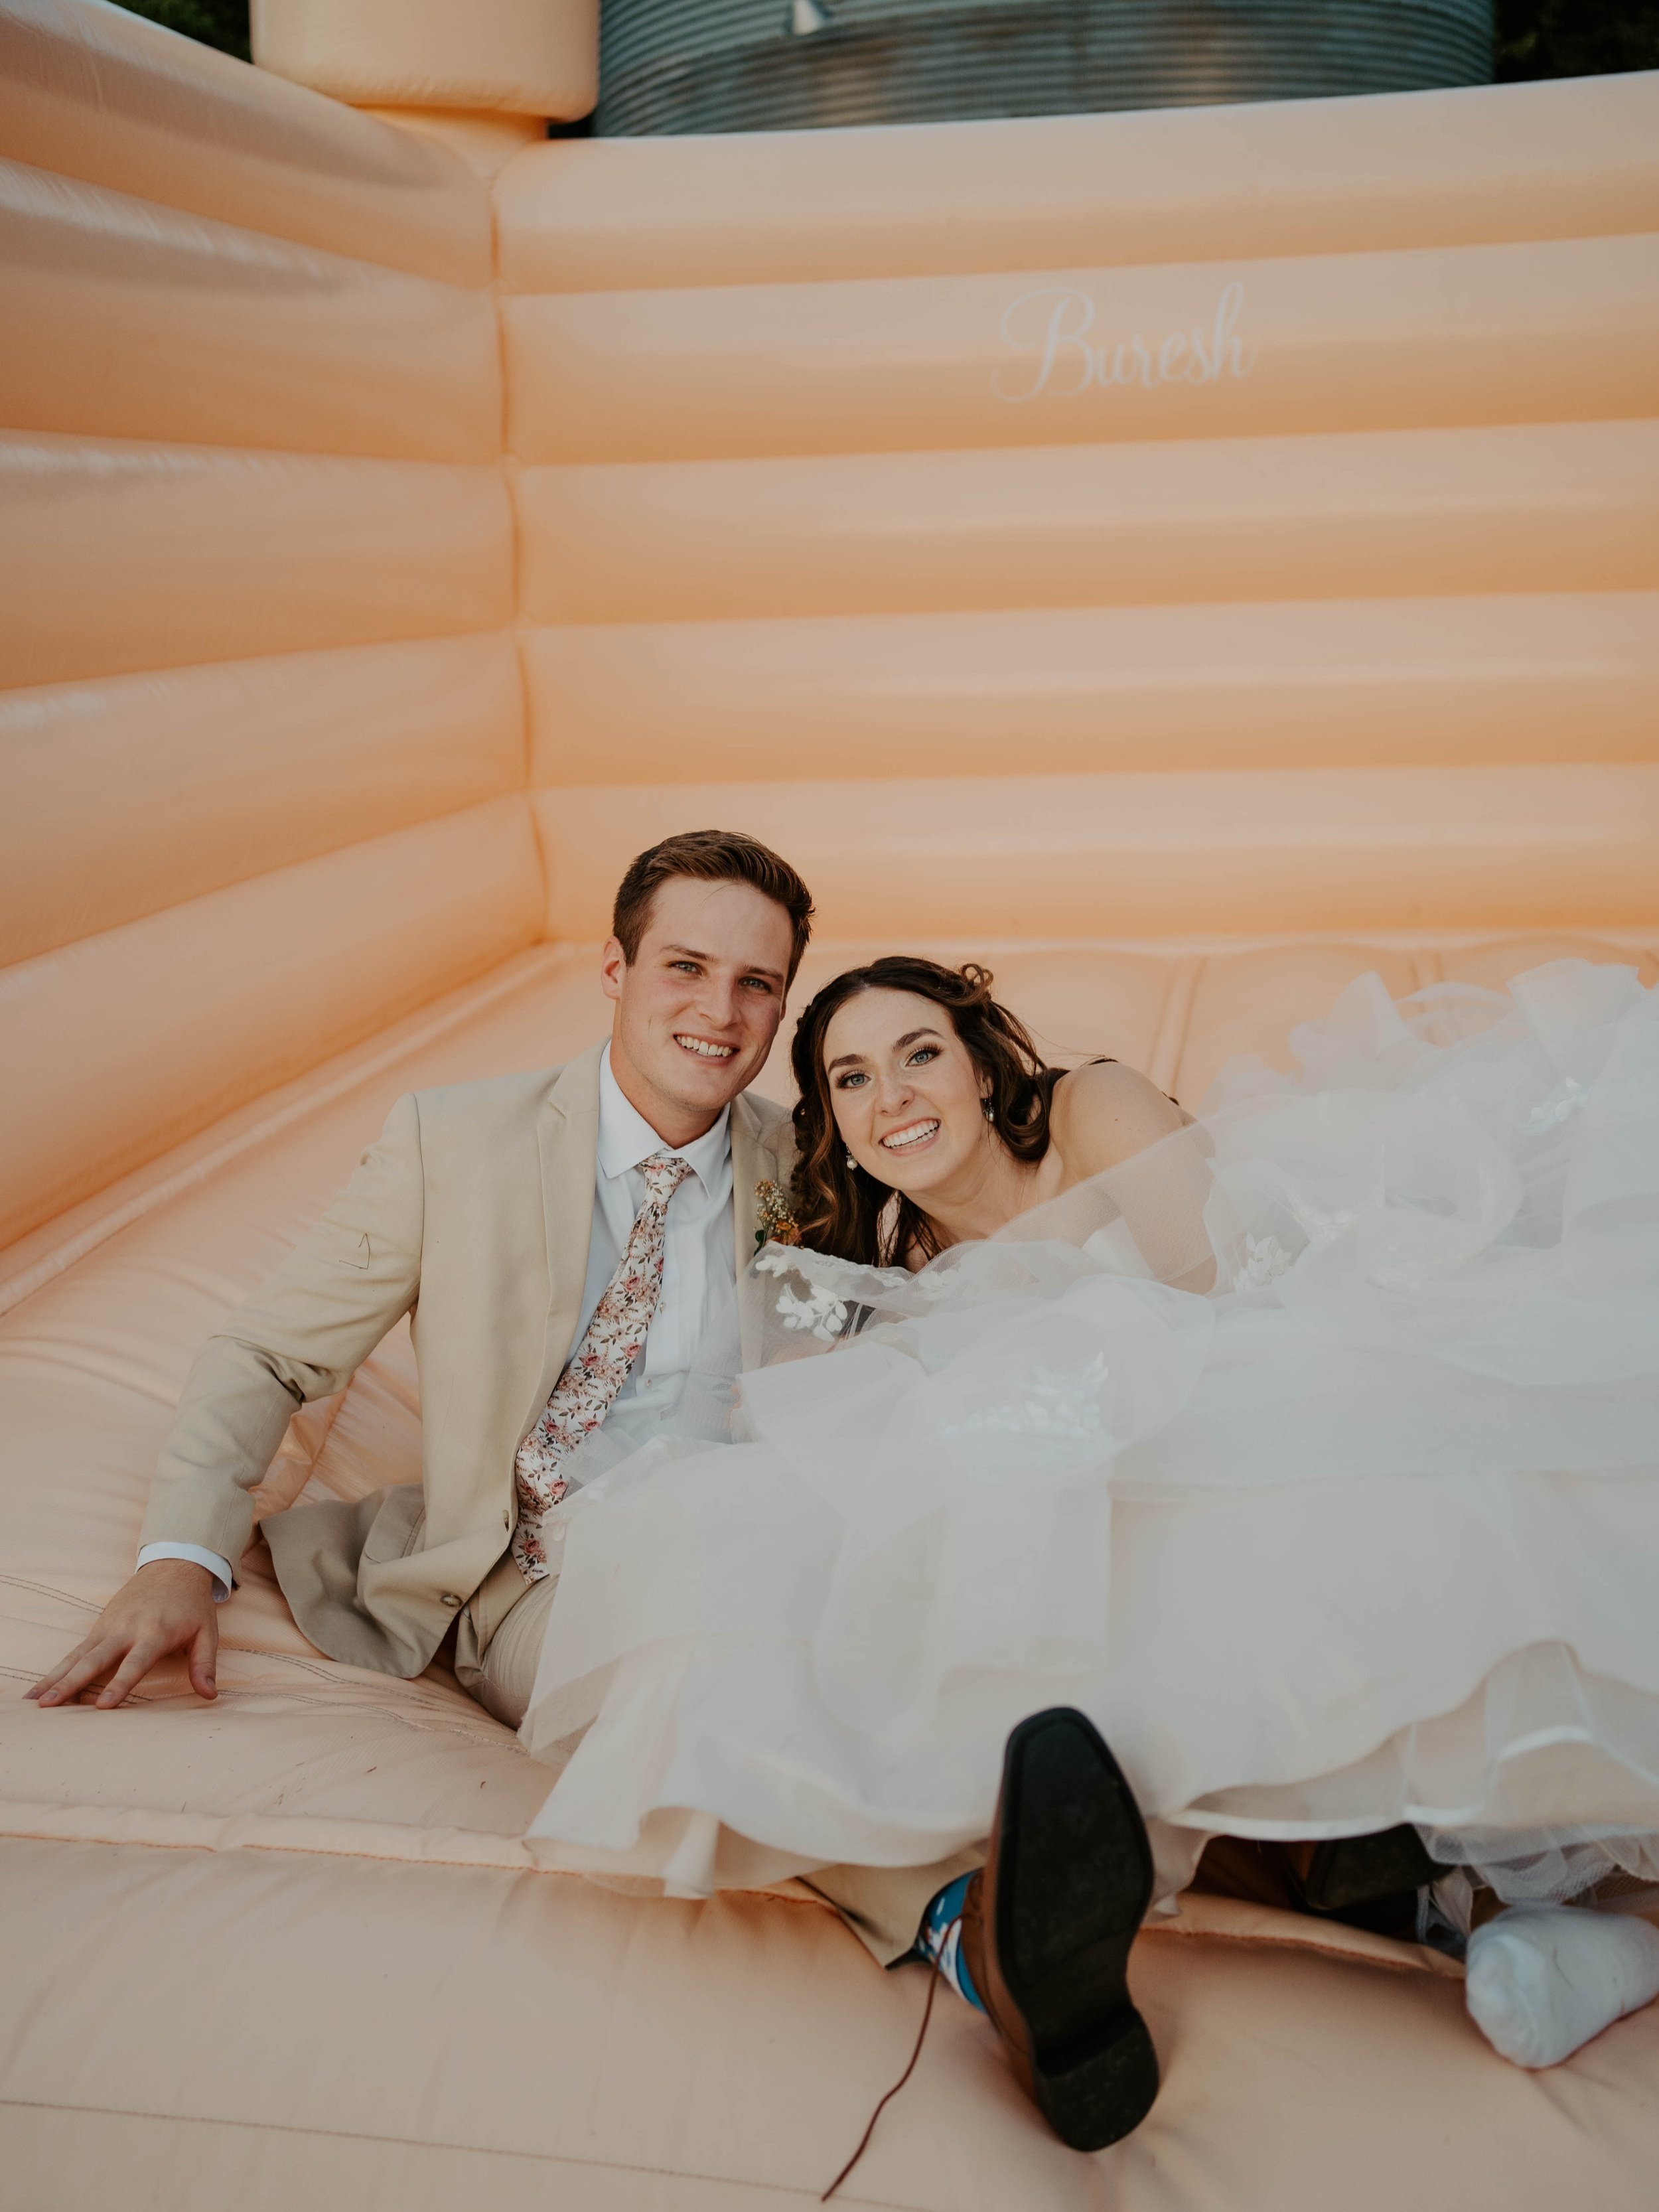 The Establishment Barn - Dallas, Texas - Vibrant Outdoor Wedding Photography